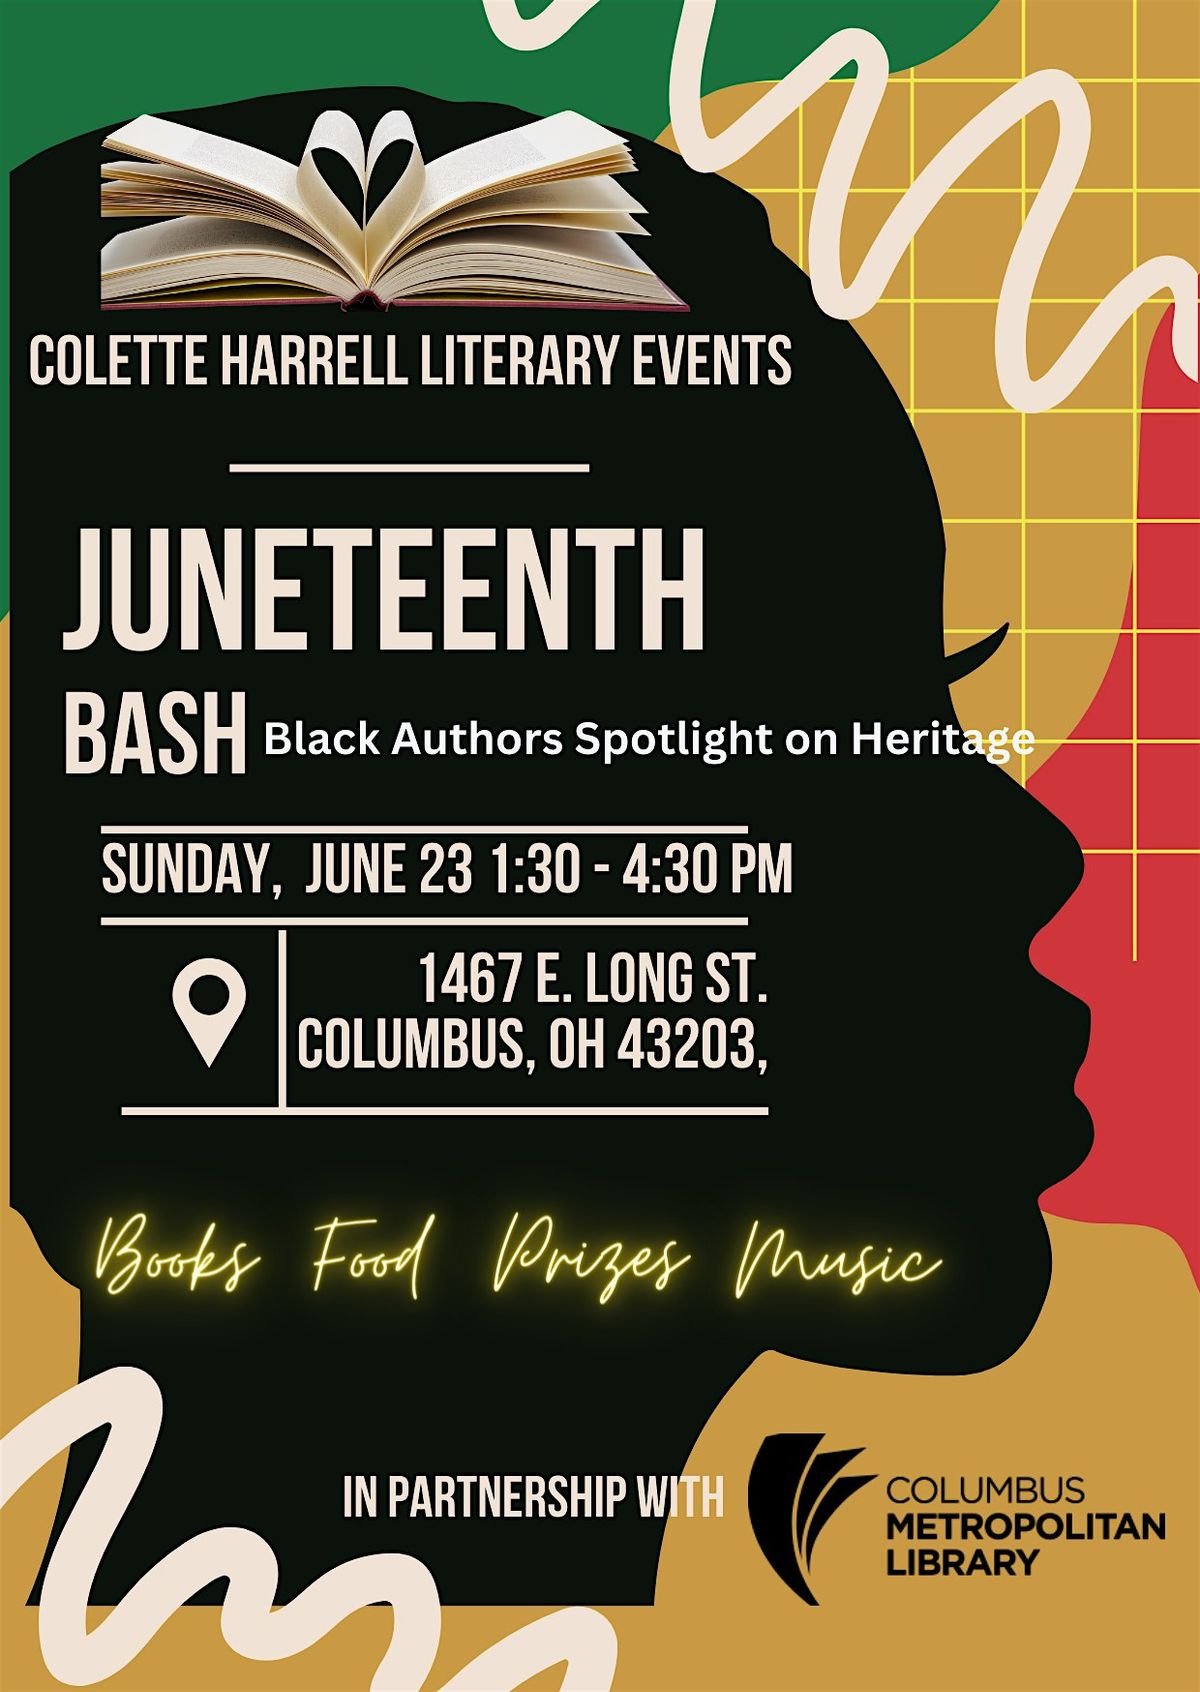 Juneteenth BASH (Black Authors Spotlight on Heritage)